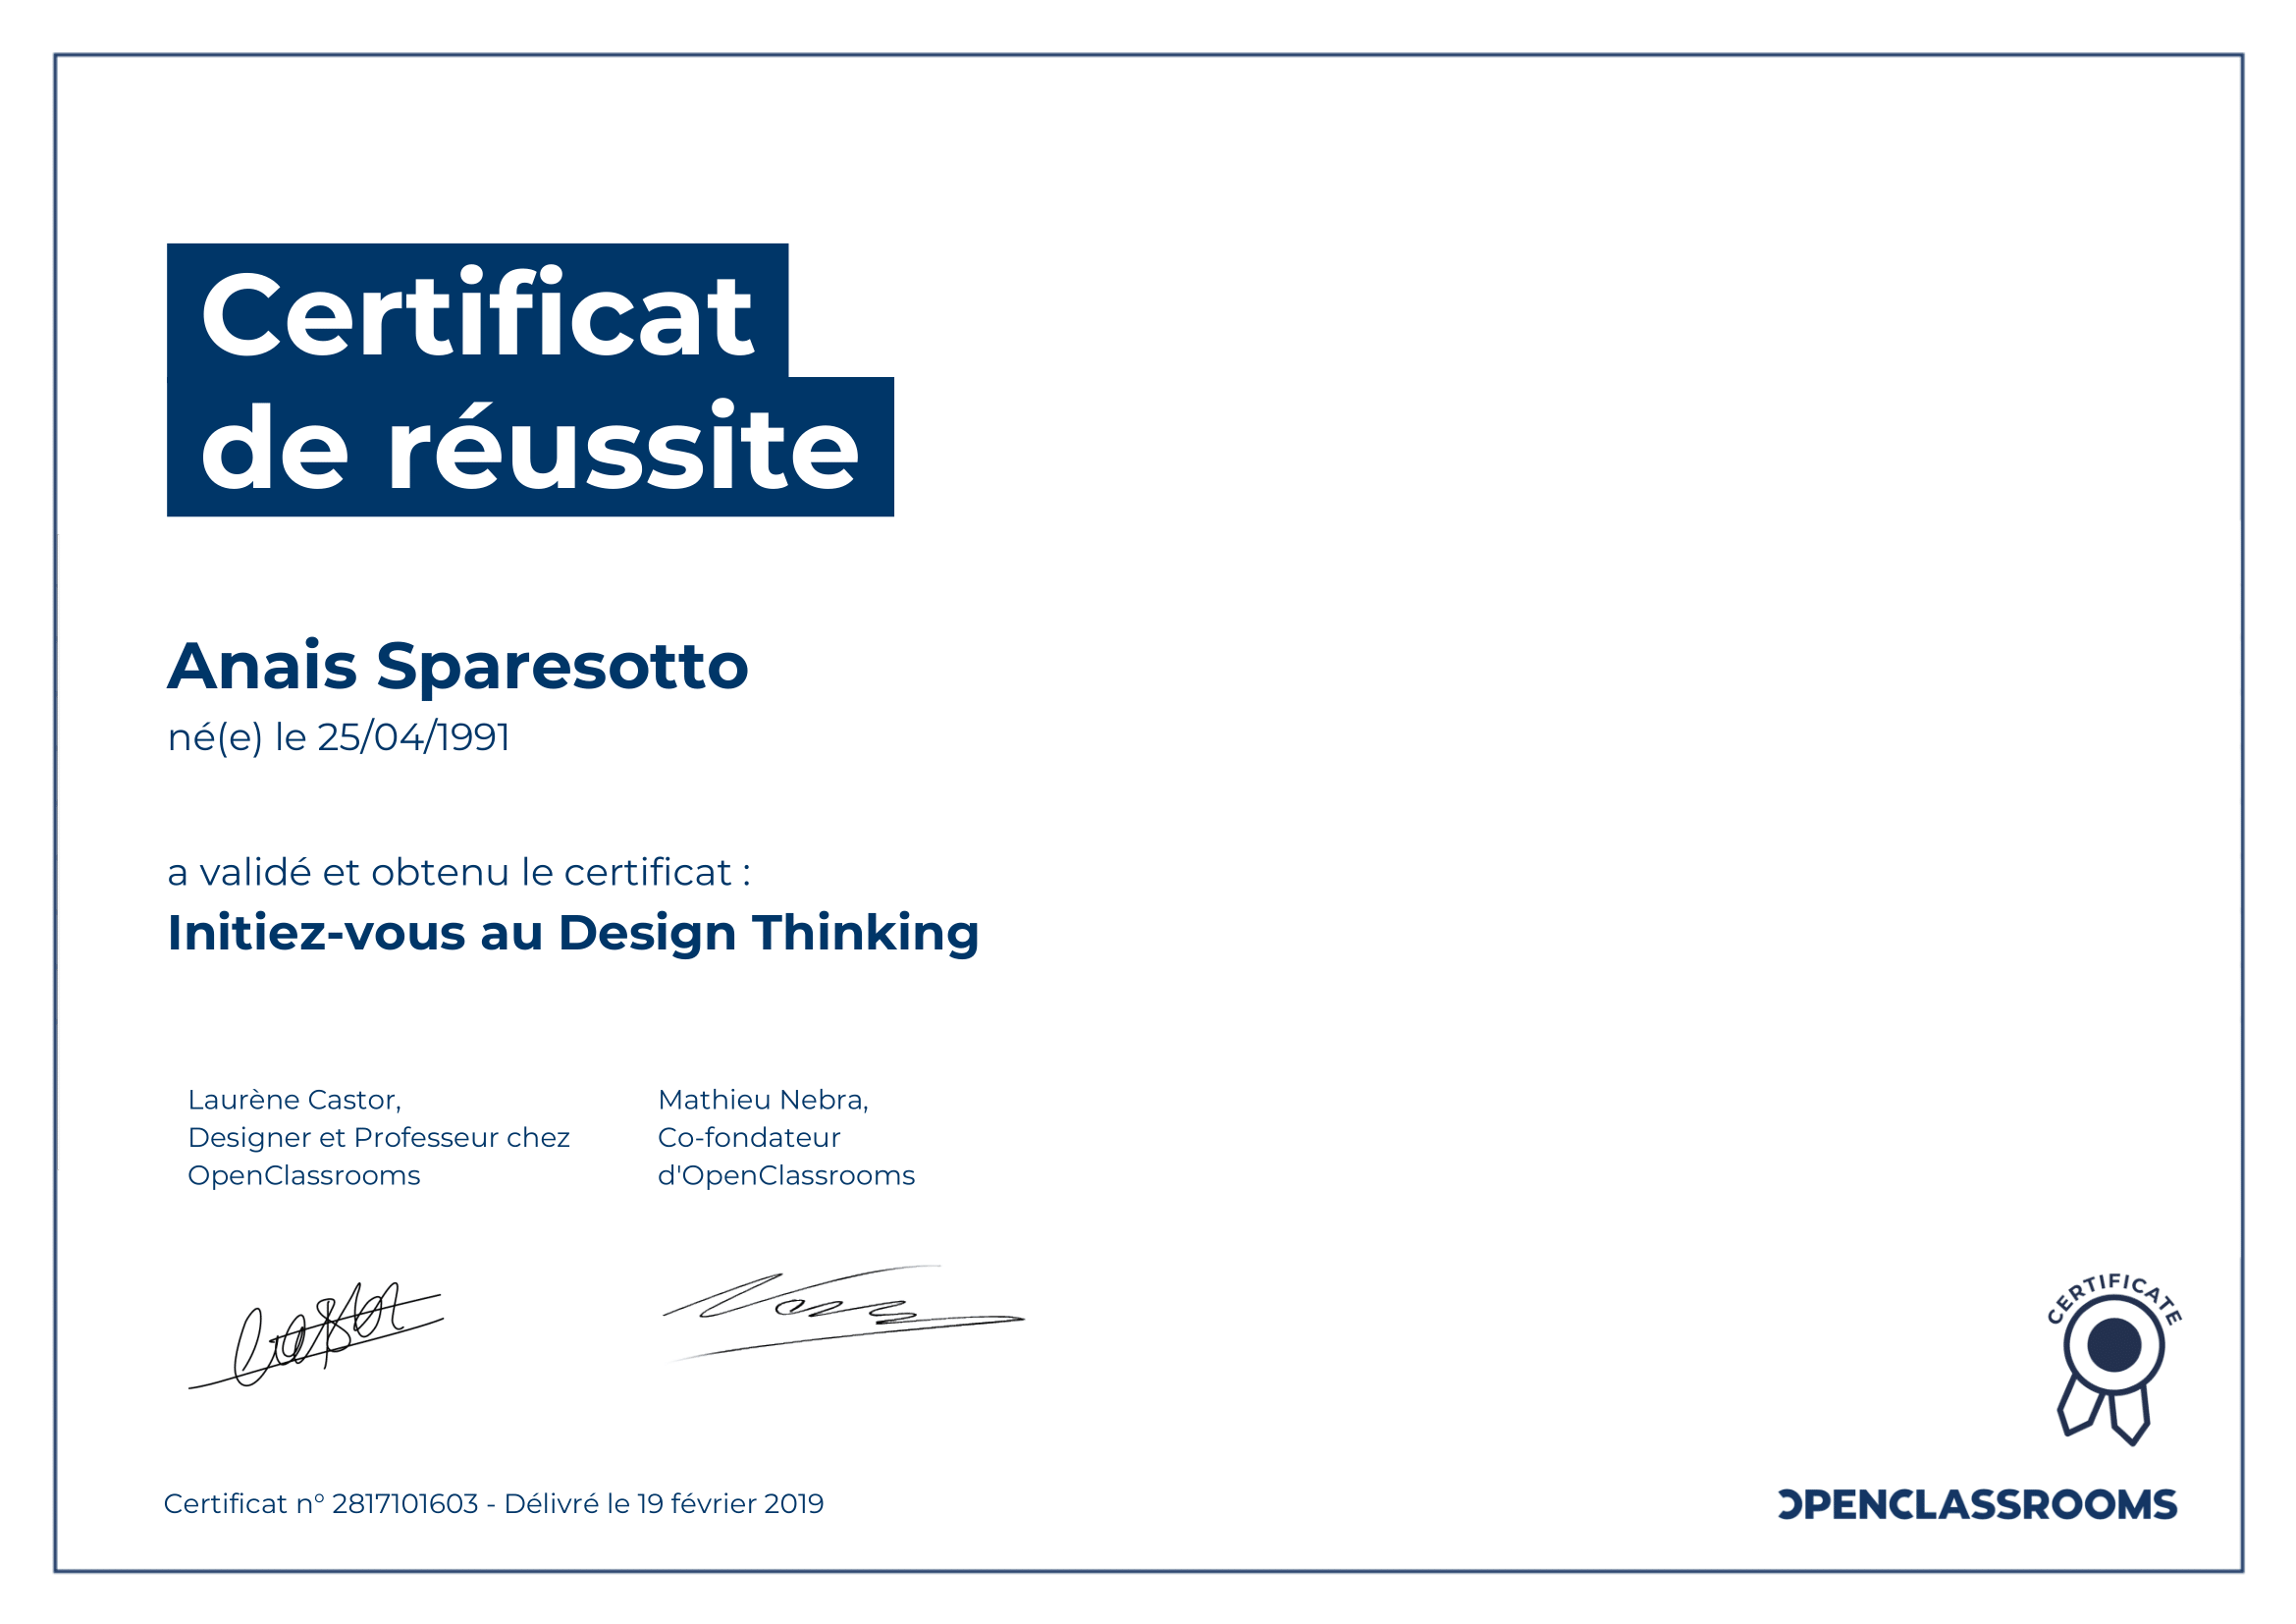 certificat de réussite design thinking sparesotto anais